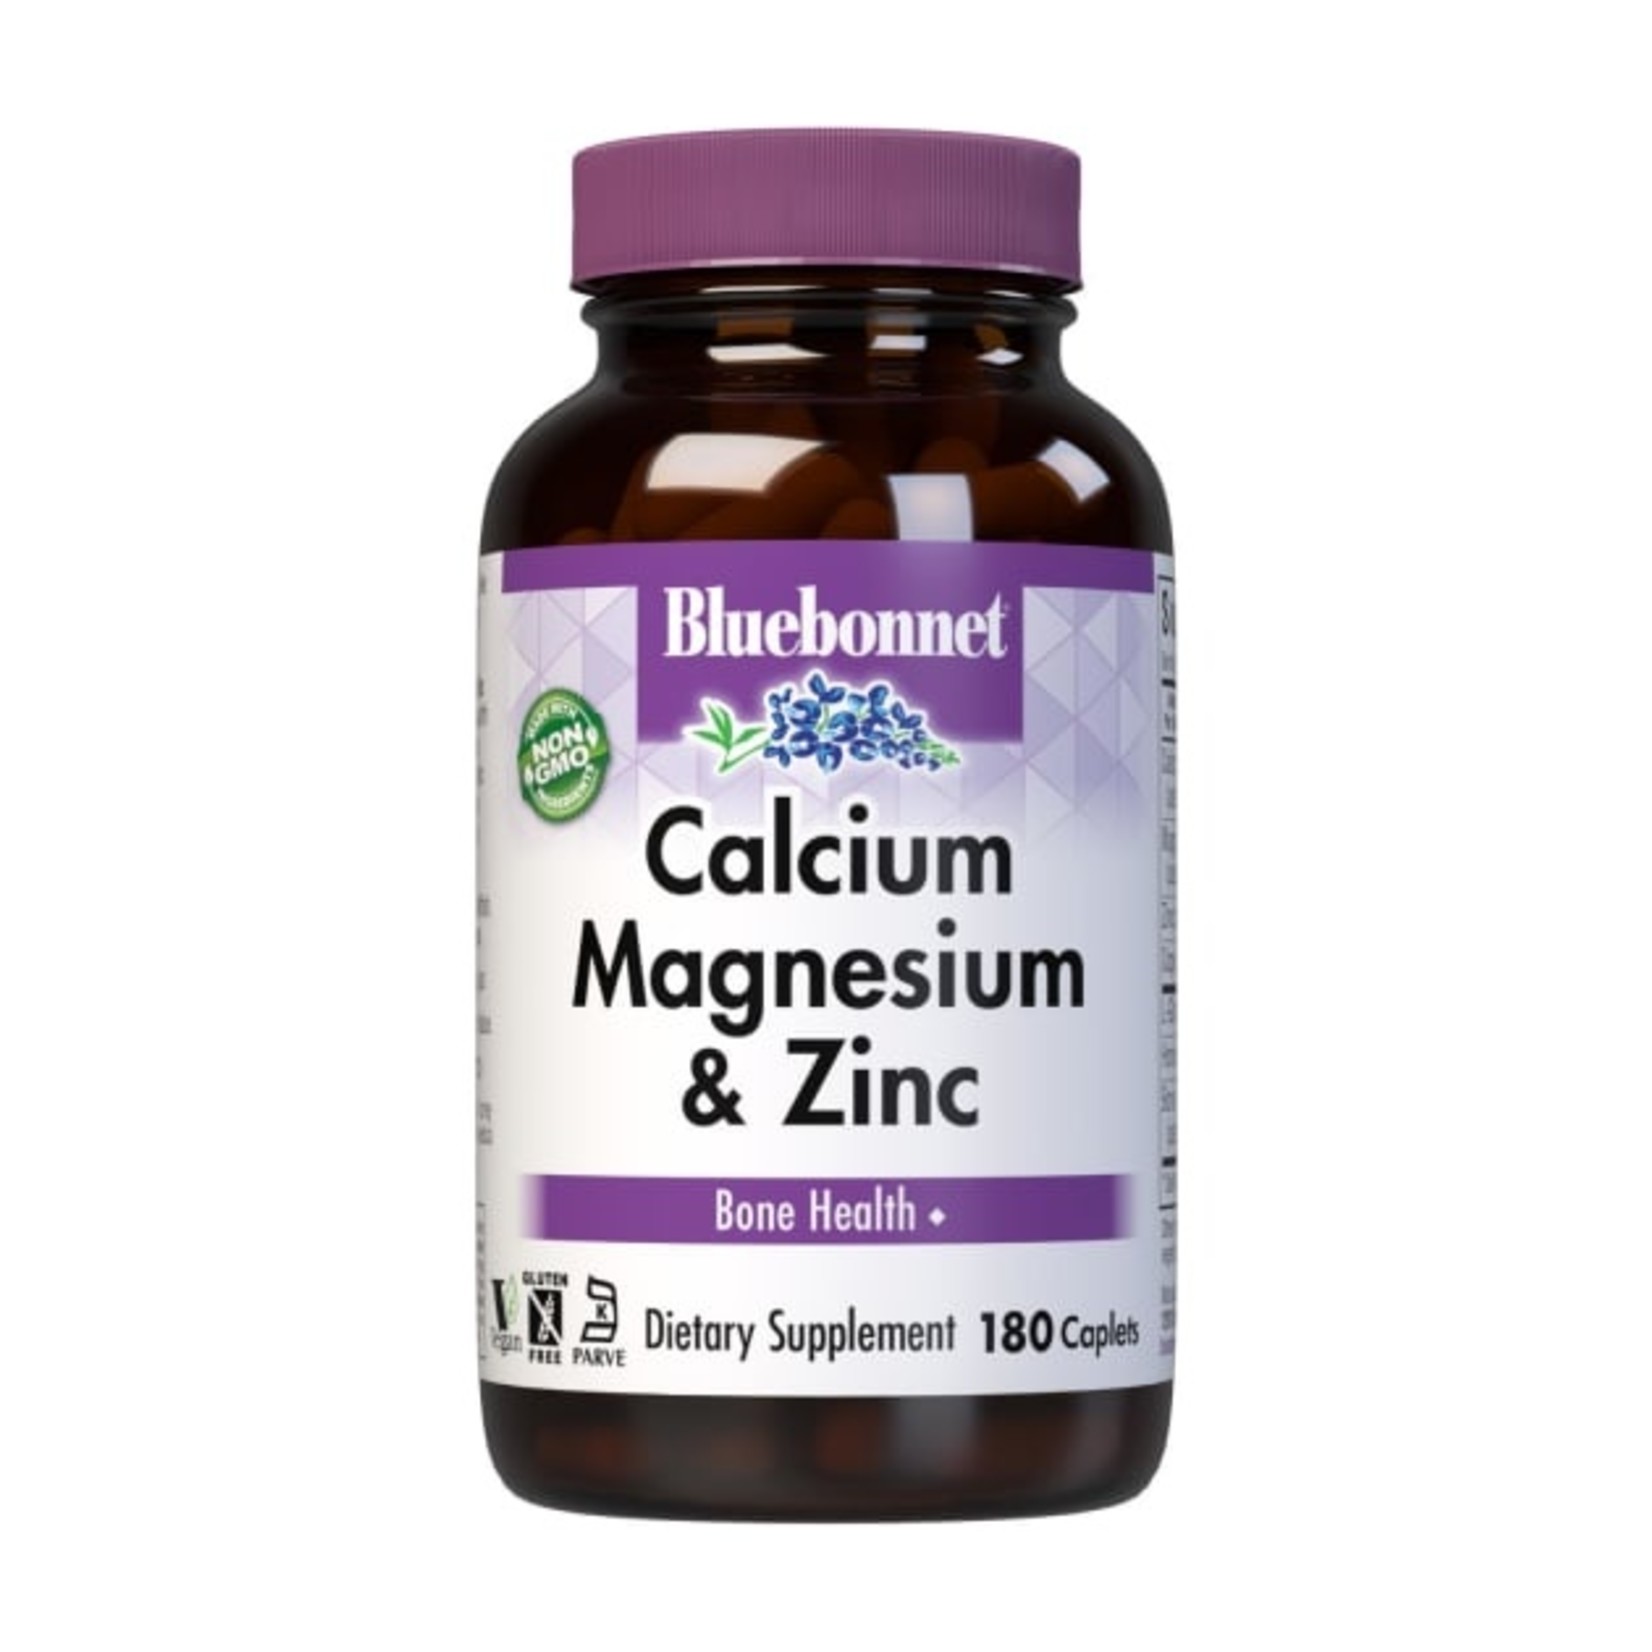 Bluebonnet Bluebonnet - Calcium Magnesium Plus Zinc - 180 Capsules